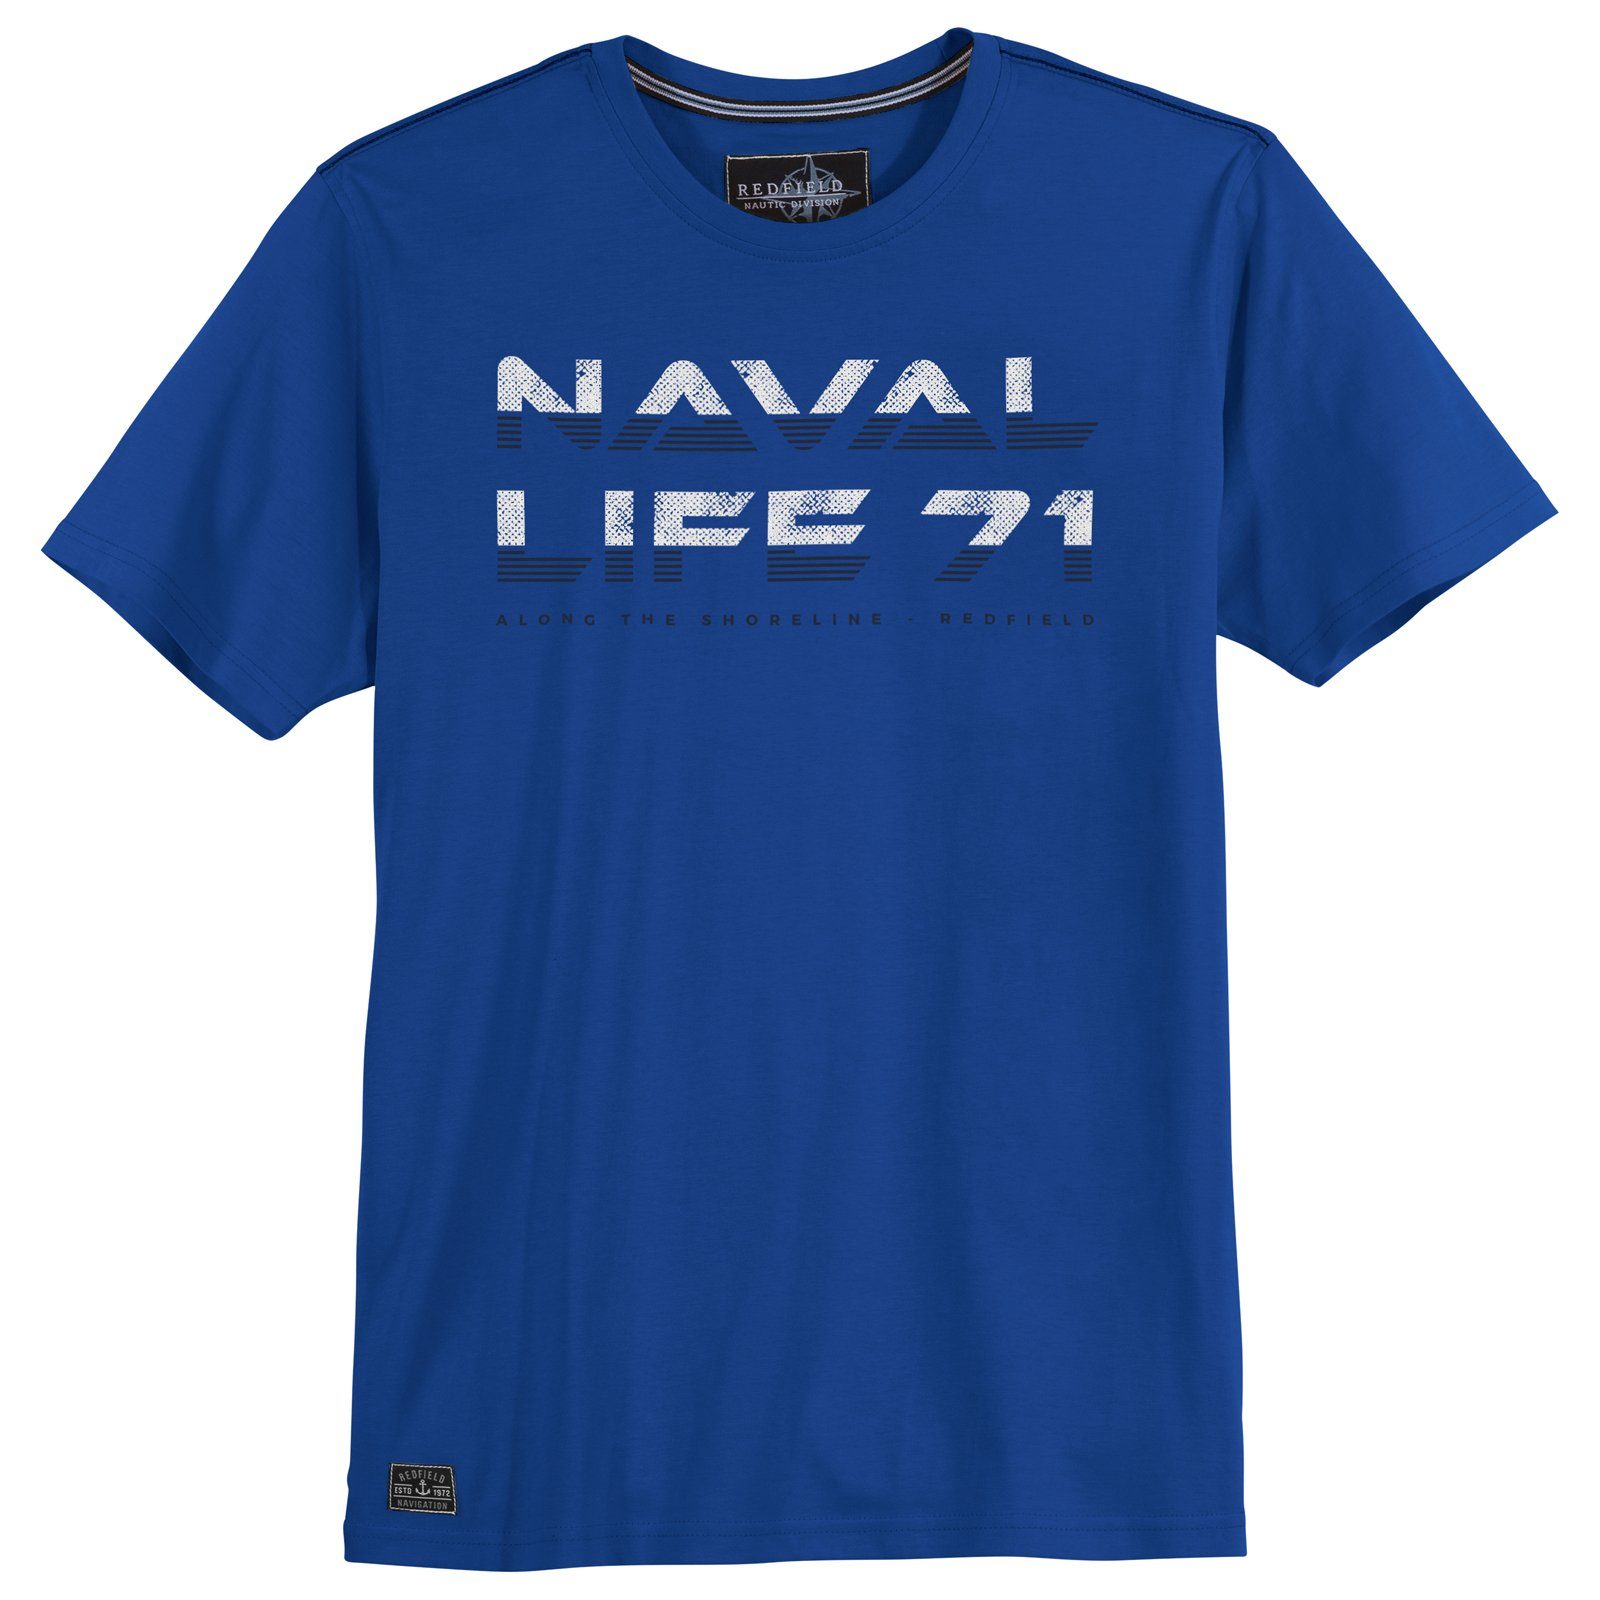 redfield Rundhalsshirt Große Größen Herren Naval 71 T-Shirt Life Redfield royalblau